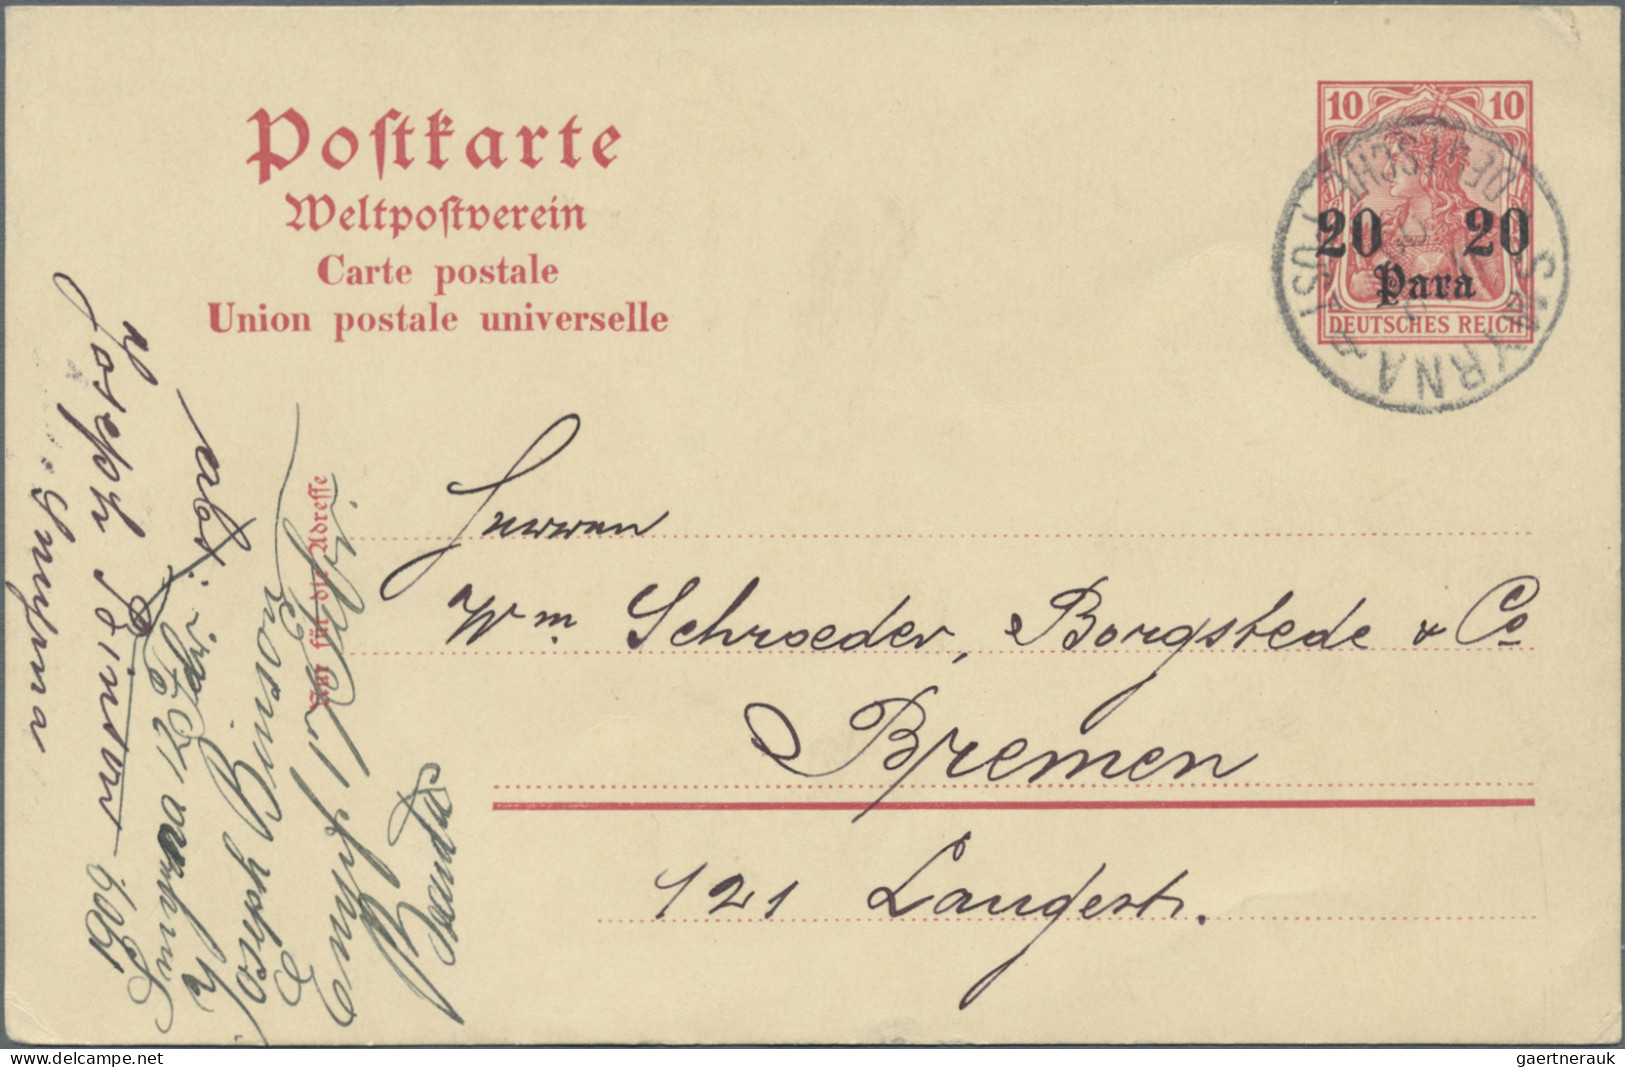 Deutsche Post in der Türkei - Ganzsachen: 1894/1914, saubere Partie von 18 gebra